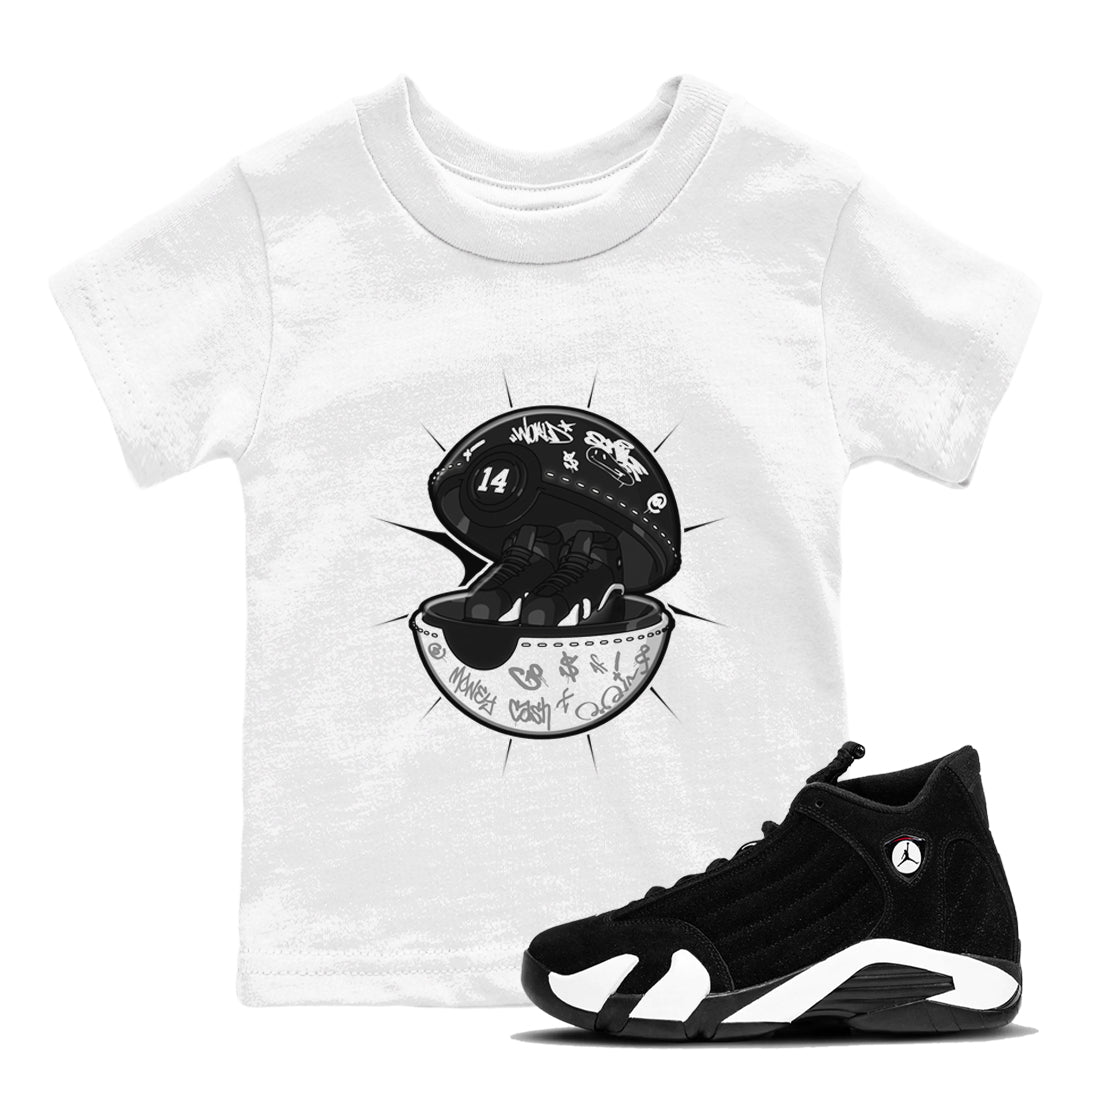 14s Panda shirt to match jordans Sneaker Capsule sneaker tees Air Jordan 14 Panda SNRT Sneaker Release Tees Baby Toddler White 1 T-Shirt